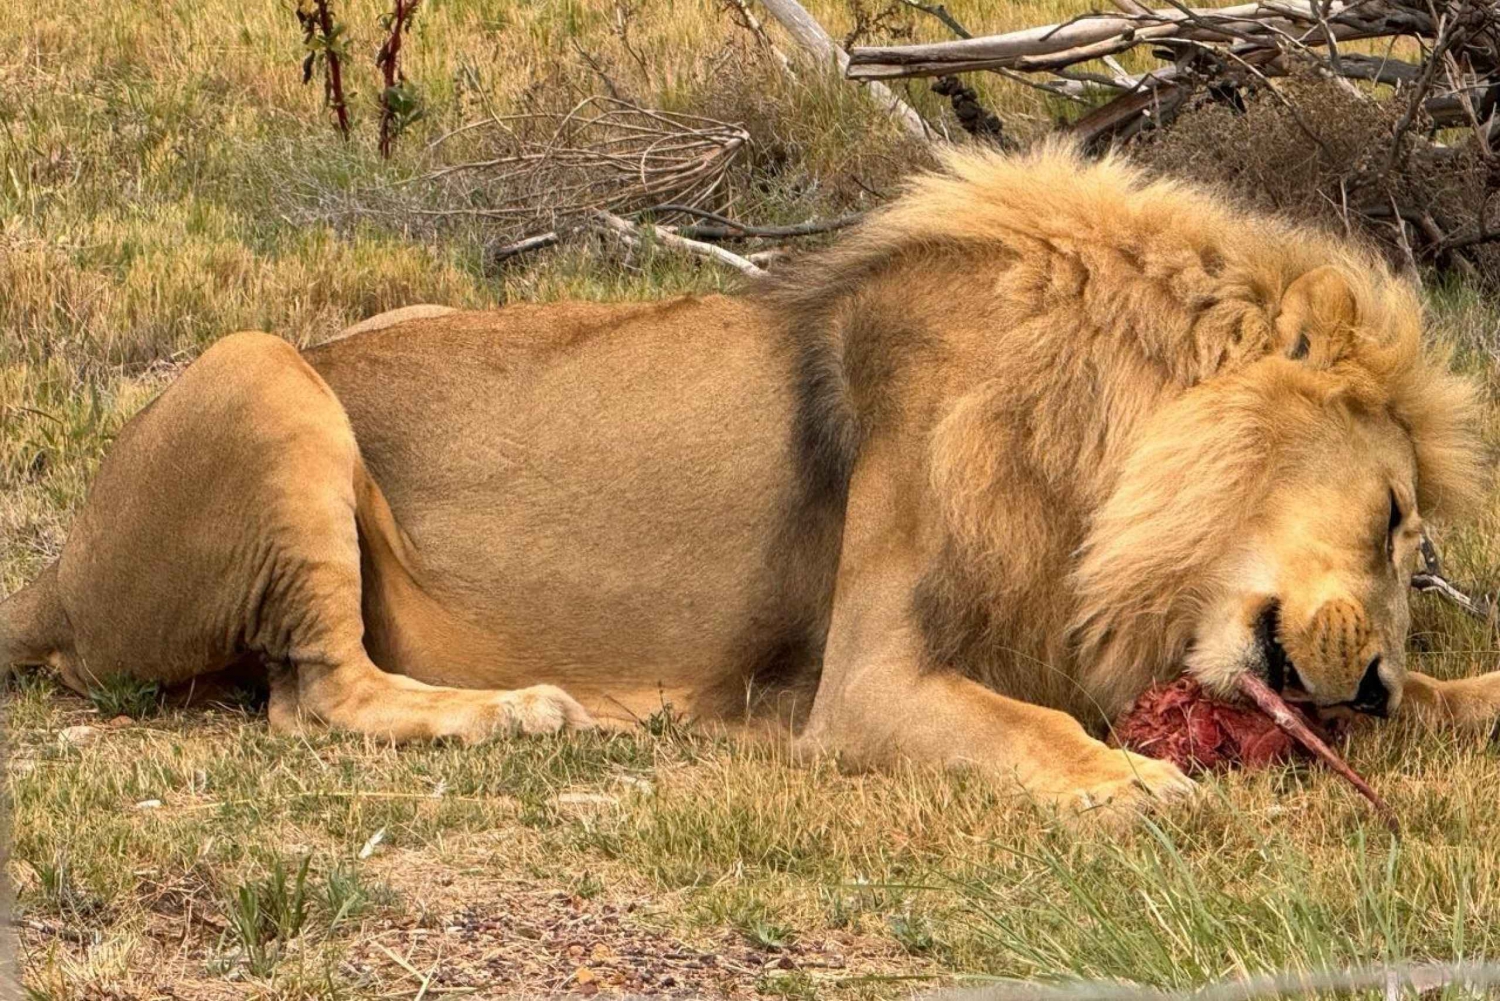 Avventura esclusiva: Assisti al nutrimento dei leoni da vicino